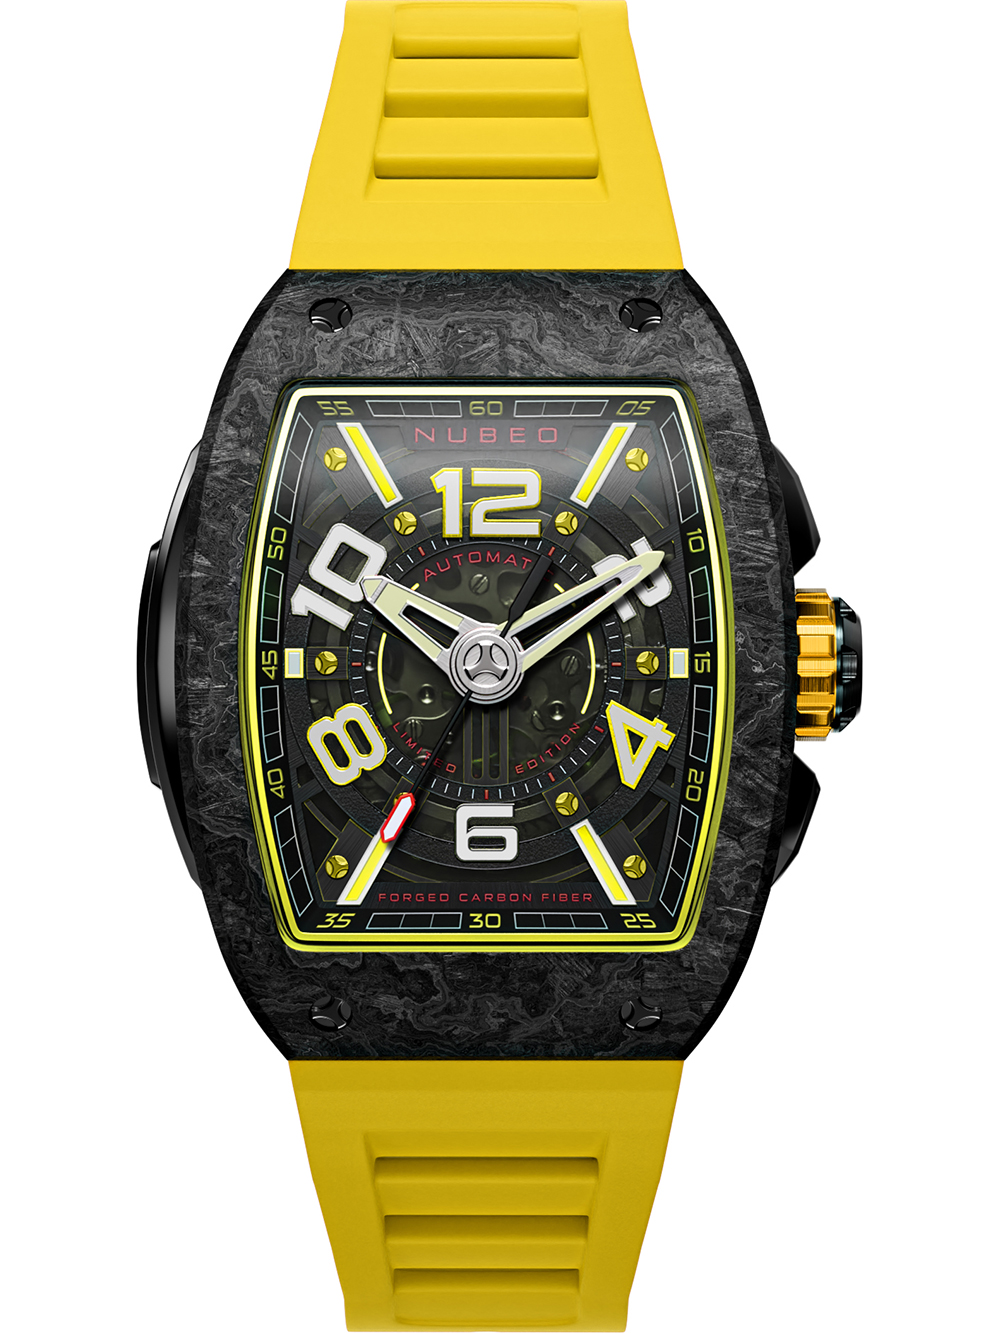 Pánské hodinky Nubeo NB-6079-03 Parker